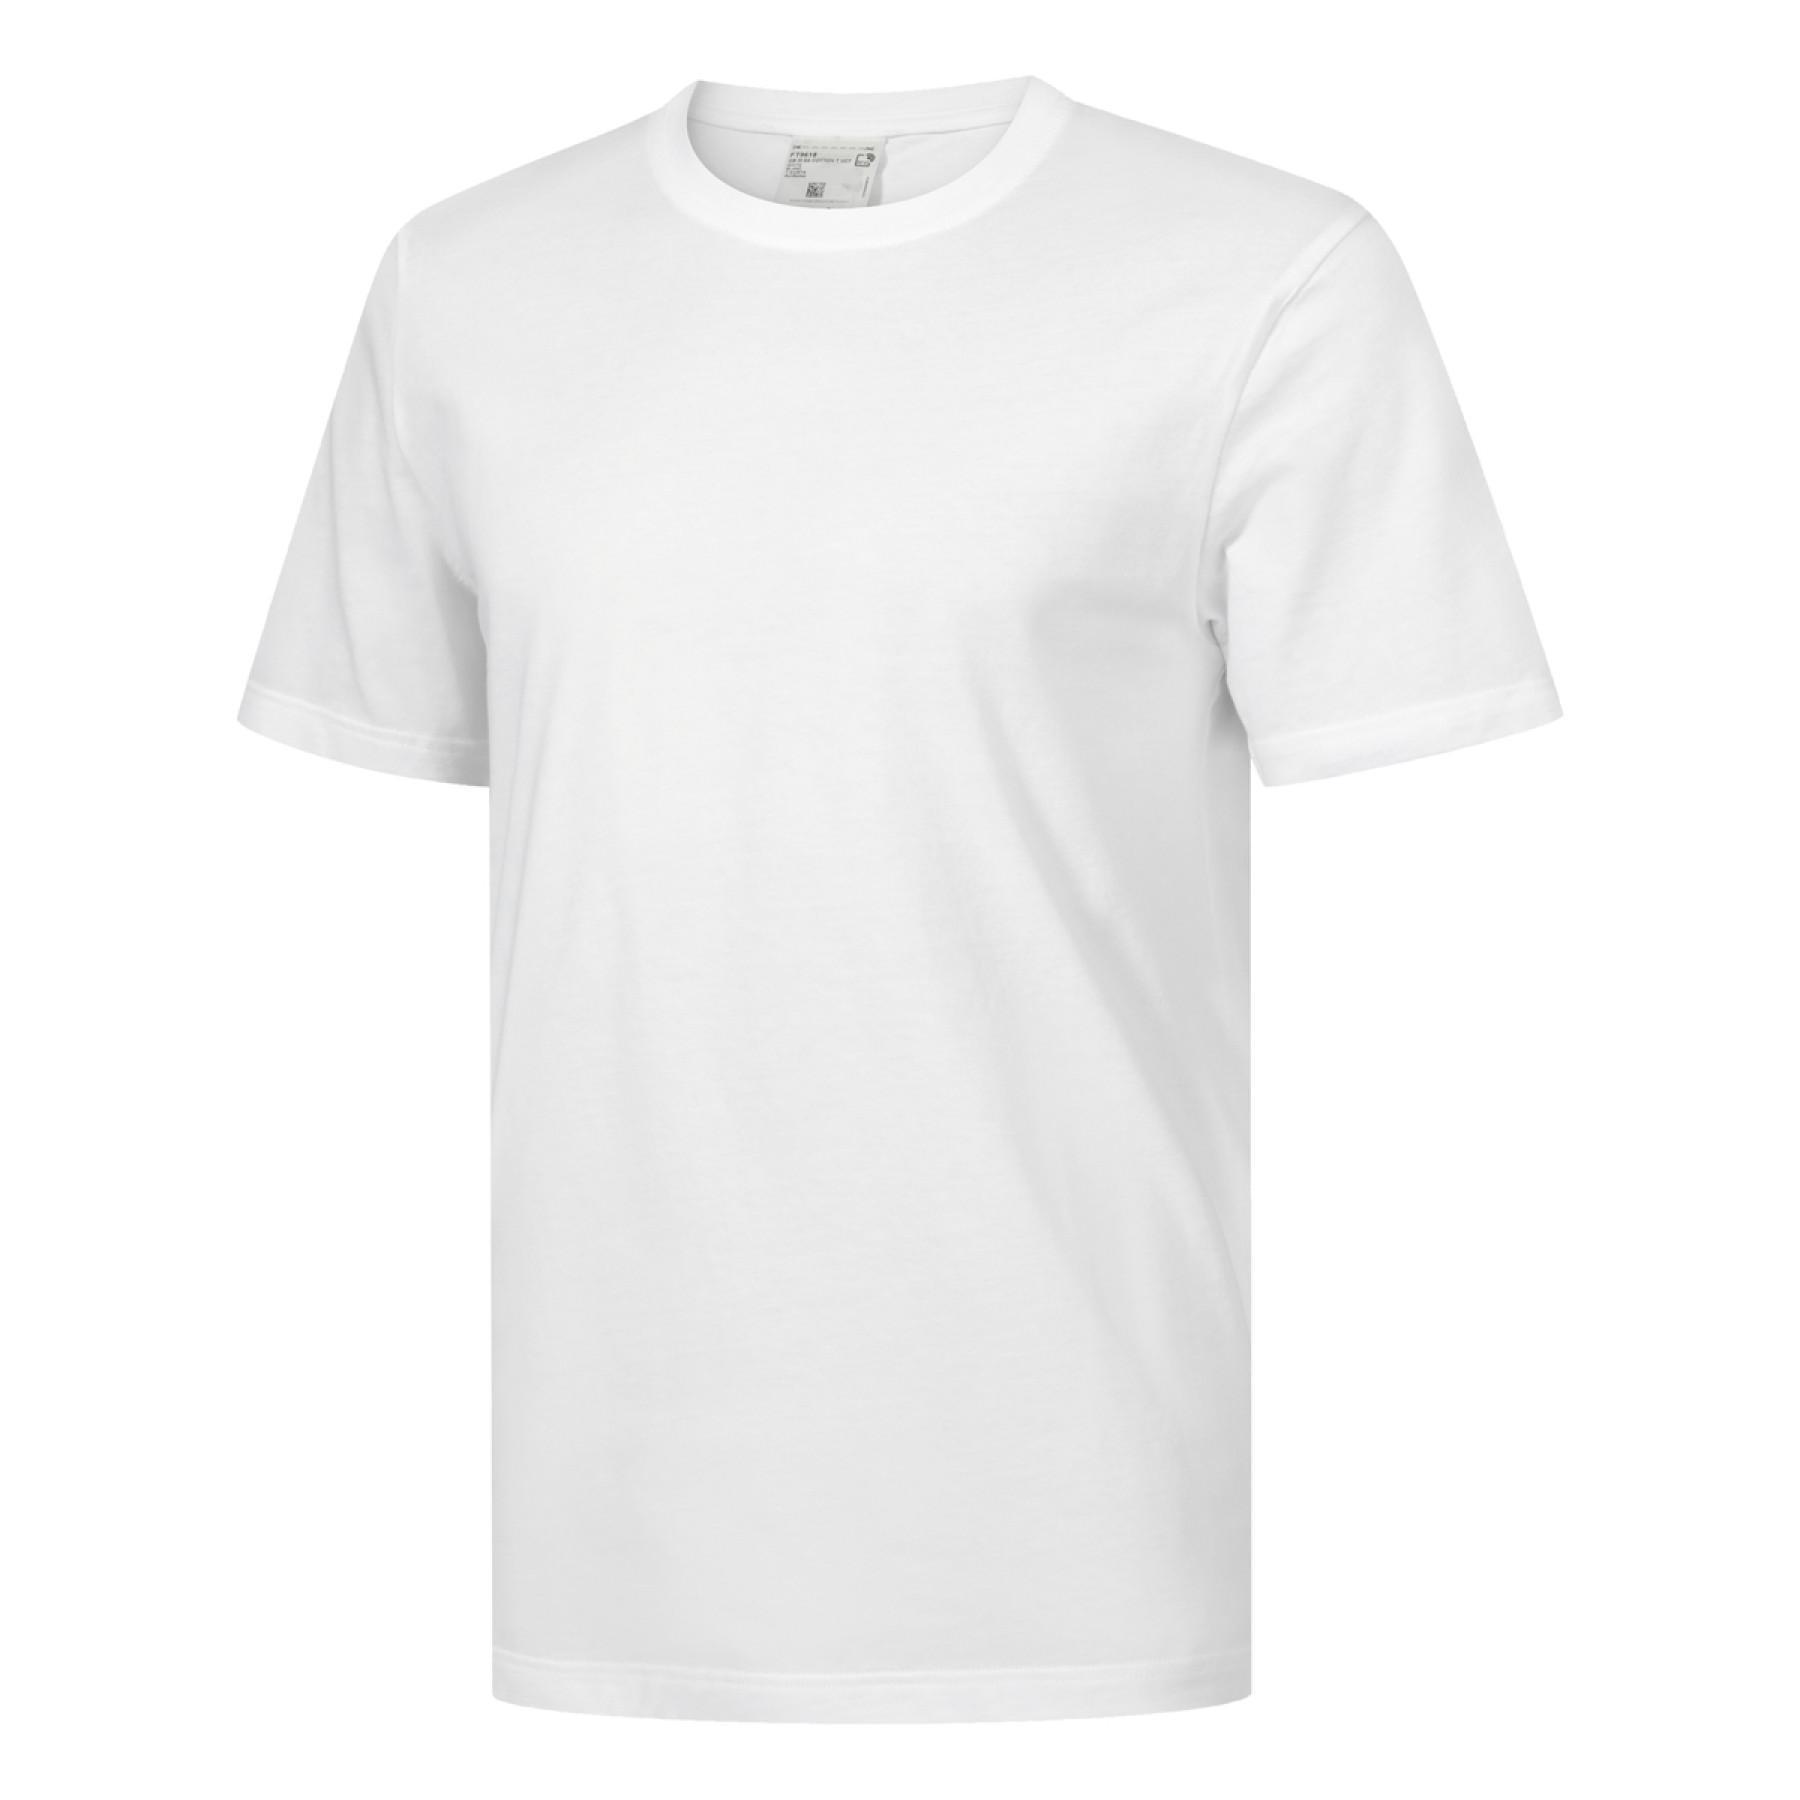 Koszulka Reebok GB Cotton Vector